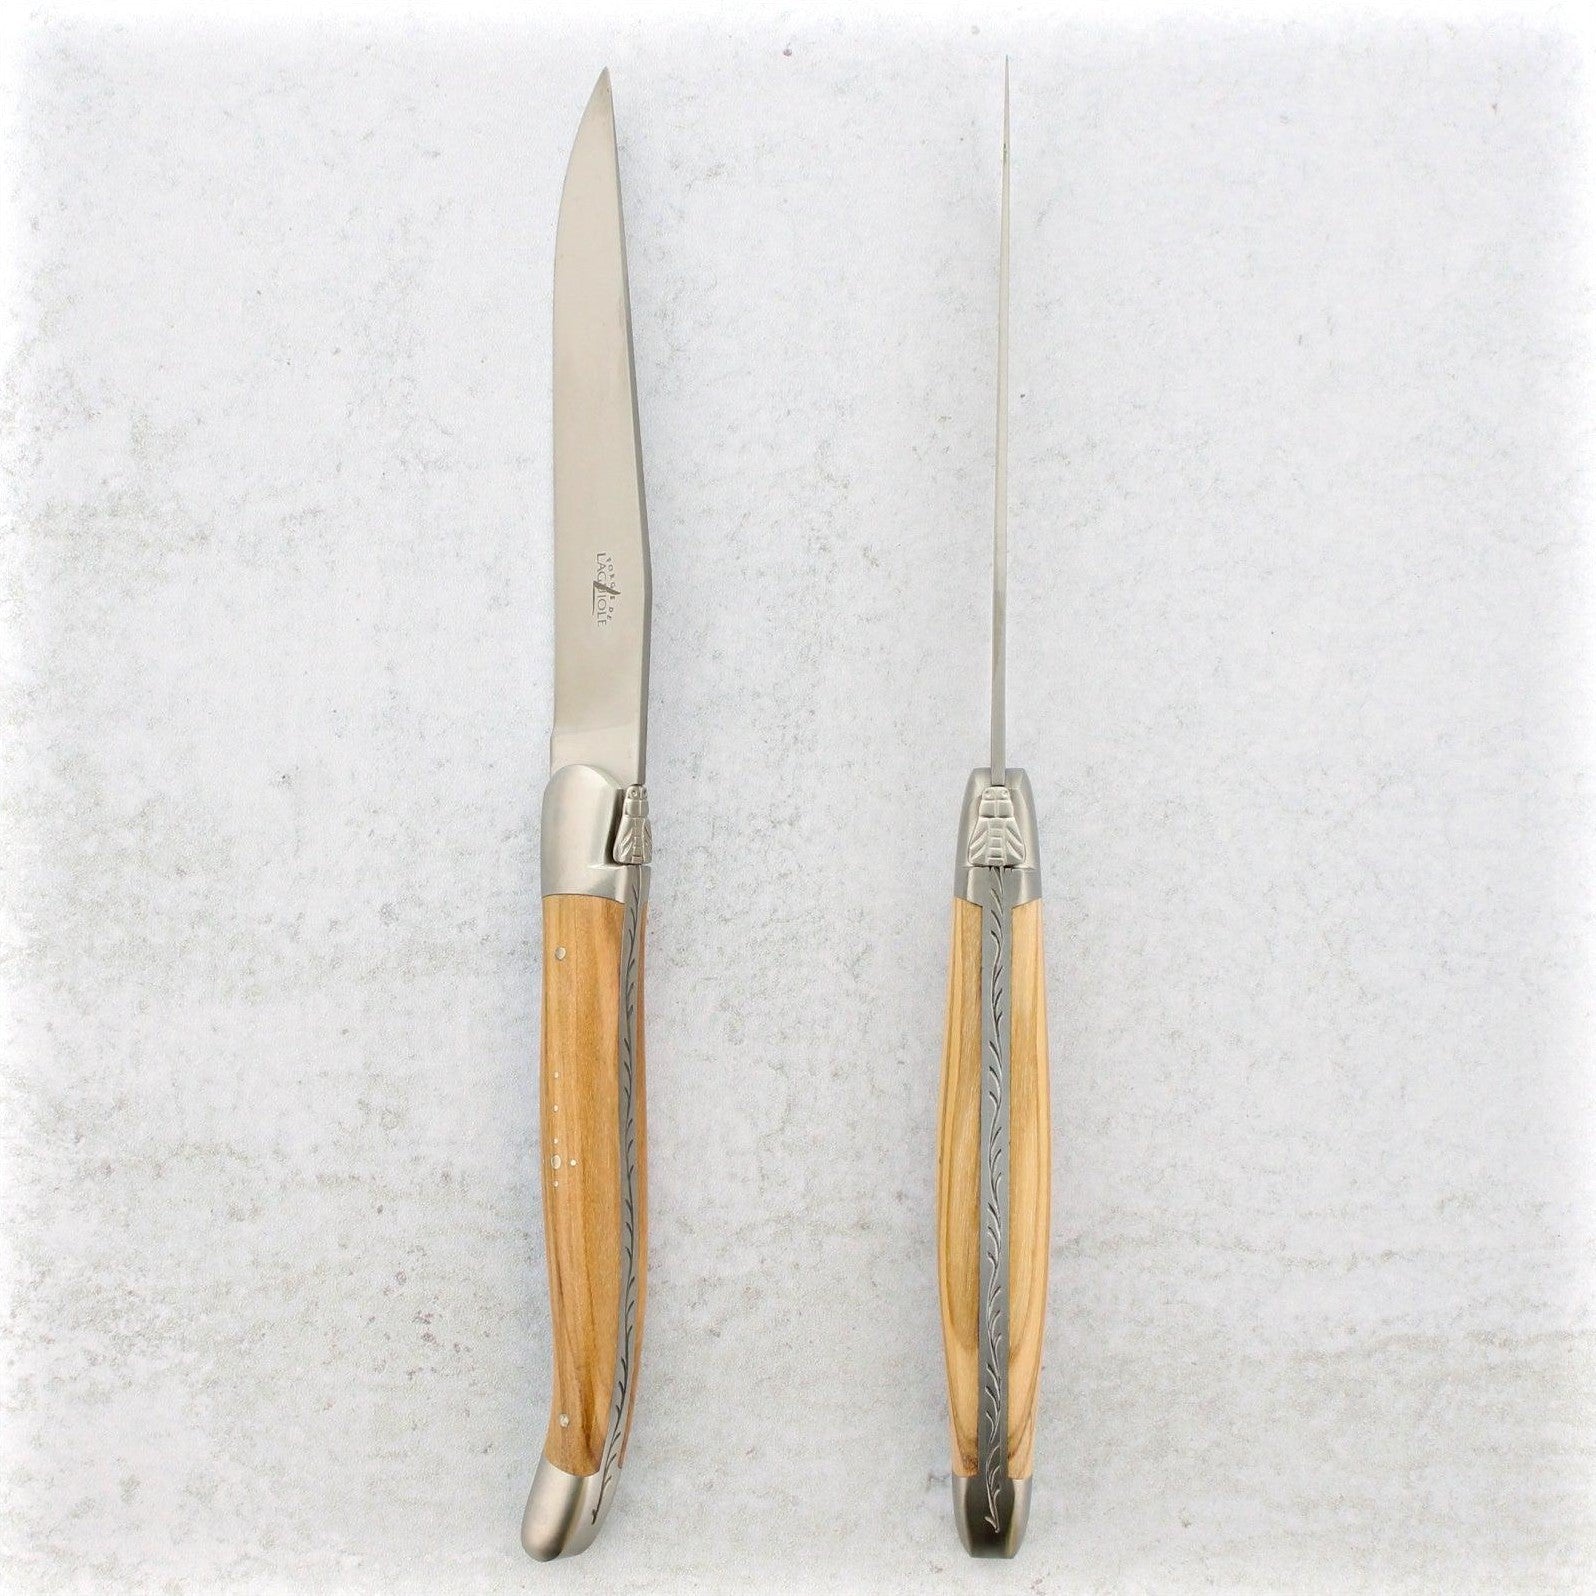 https://www.laguiole-imports.com/cdn/shop/products/Forge-de-Laguiole-Olive-Wood-Steak-Knives-Brushed-Forge-de-Laguiole-2.jpg?v=1674999057